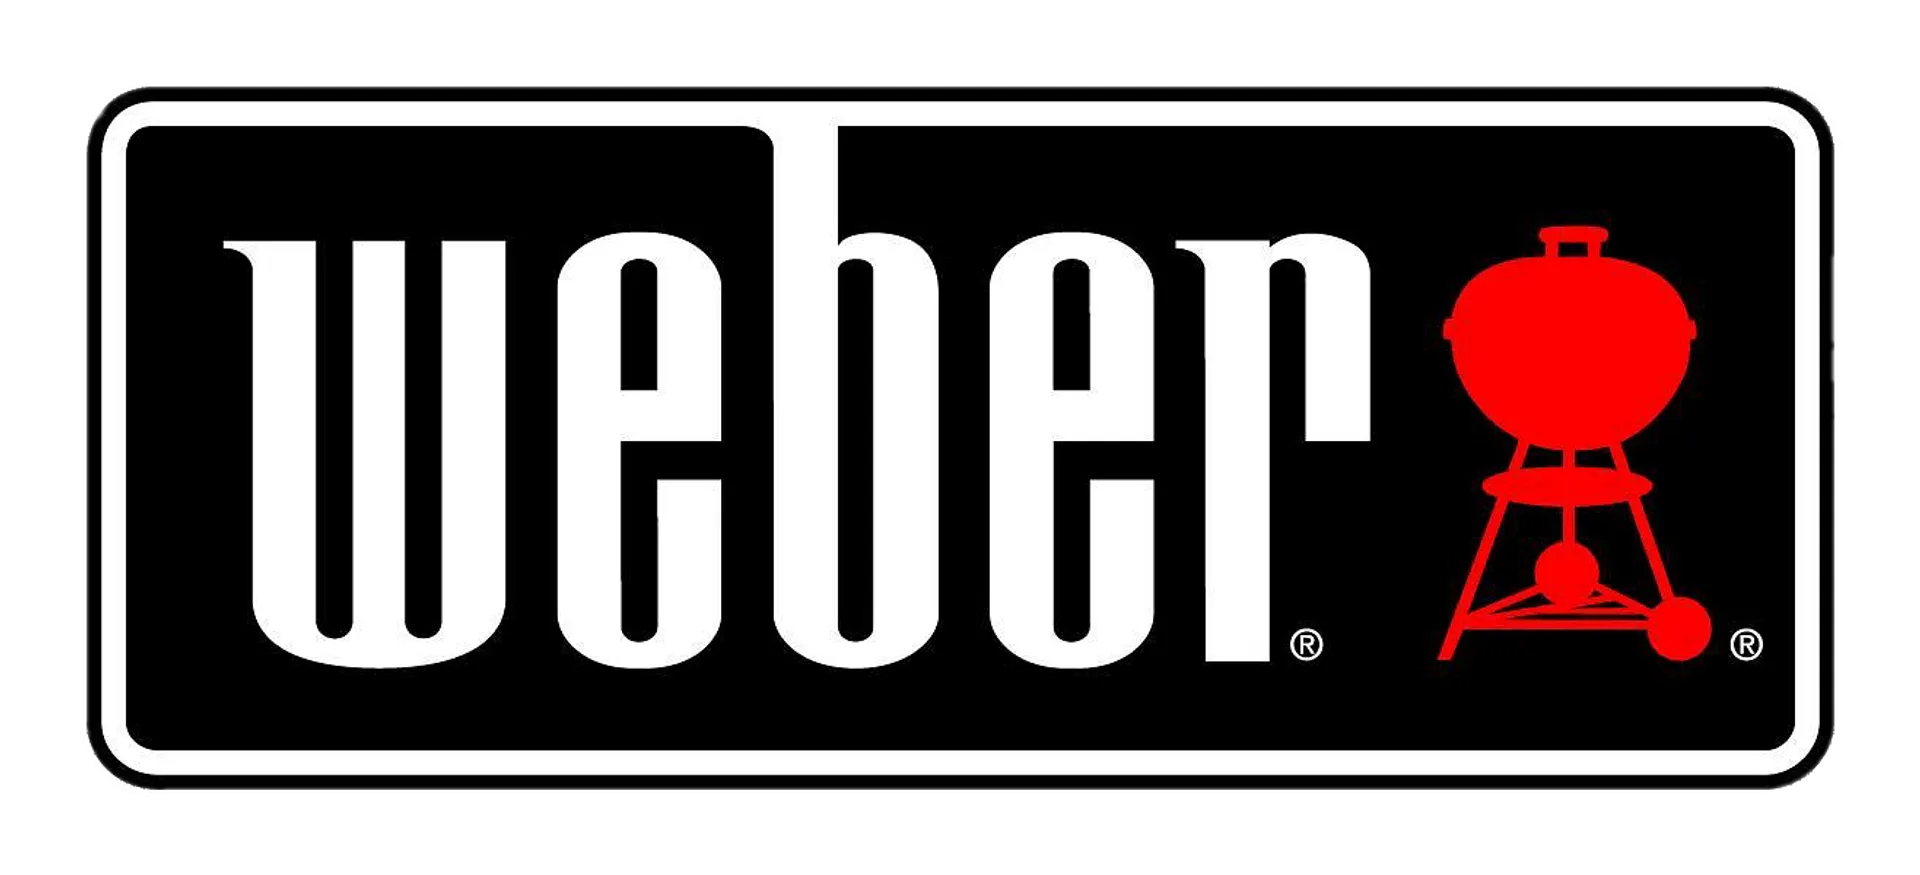 WEBER logo